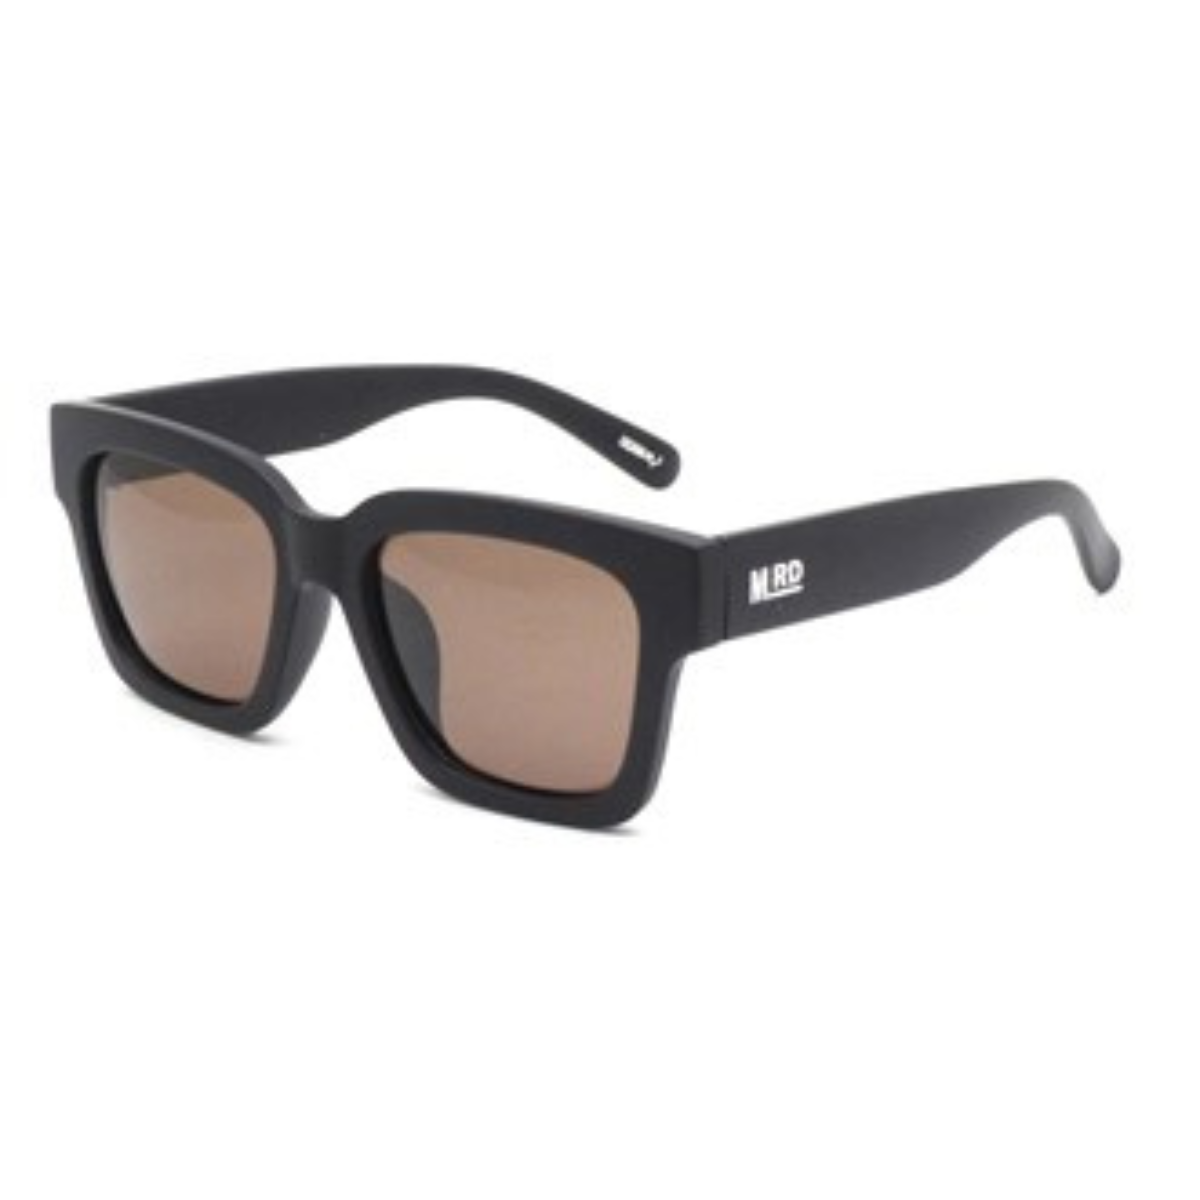 Moana Road Cilla Black Sunglasses